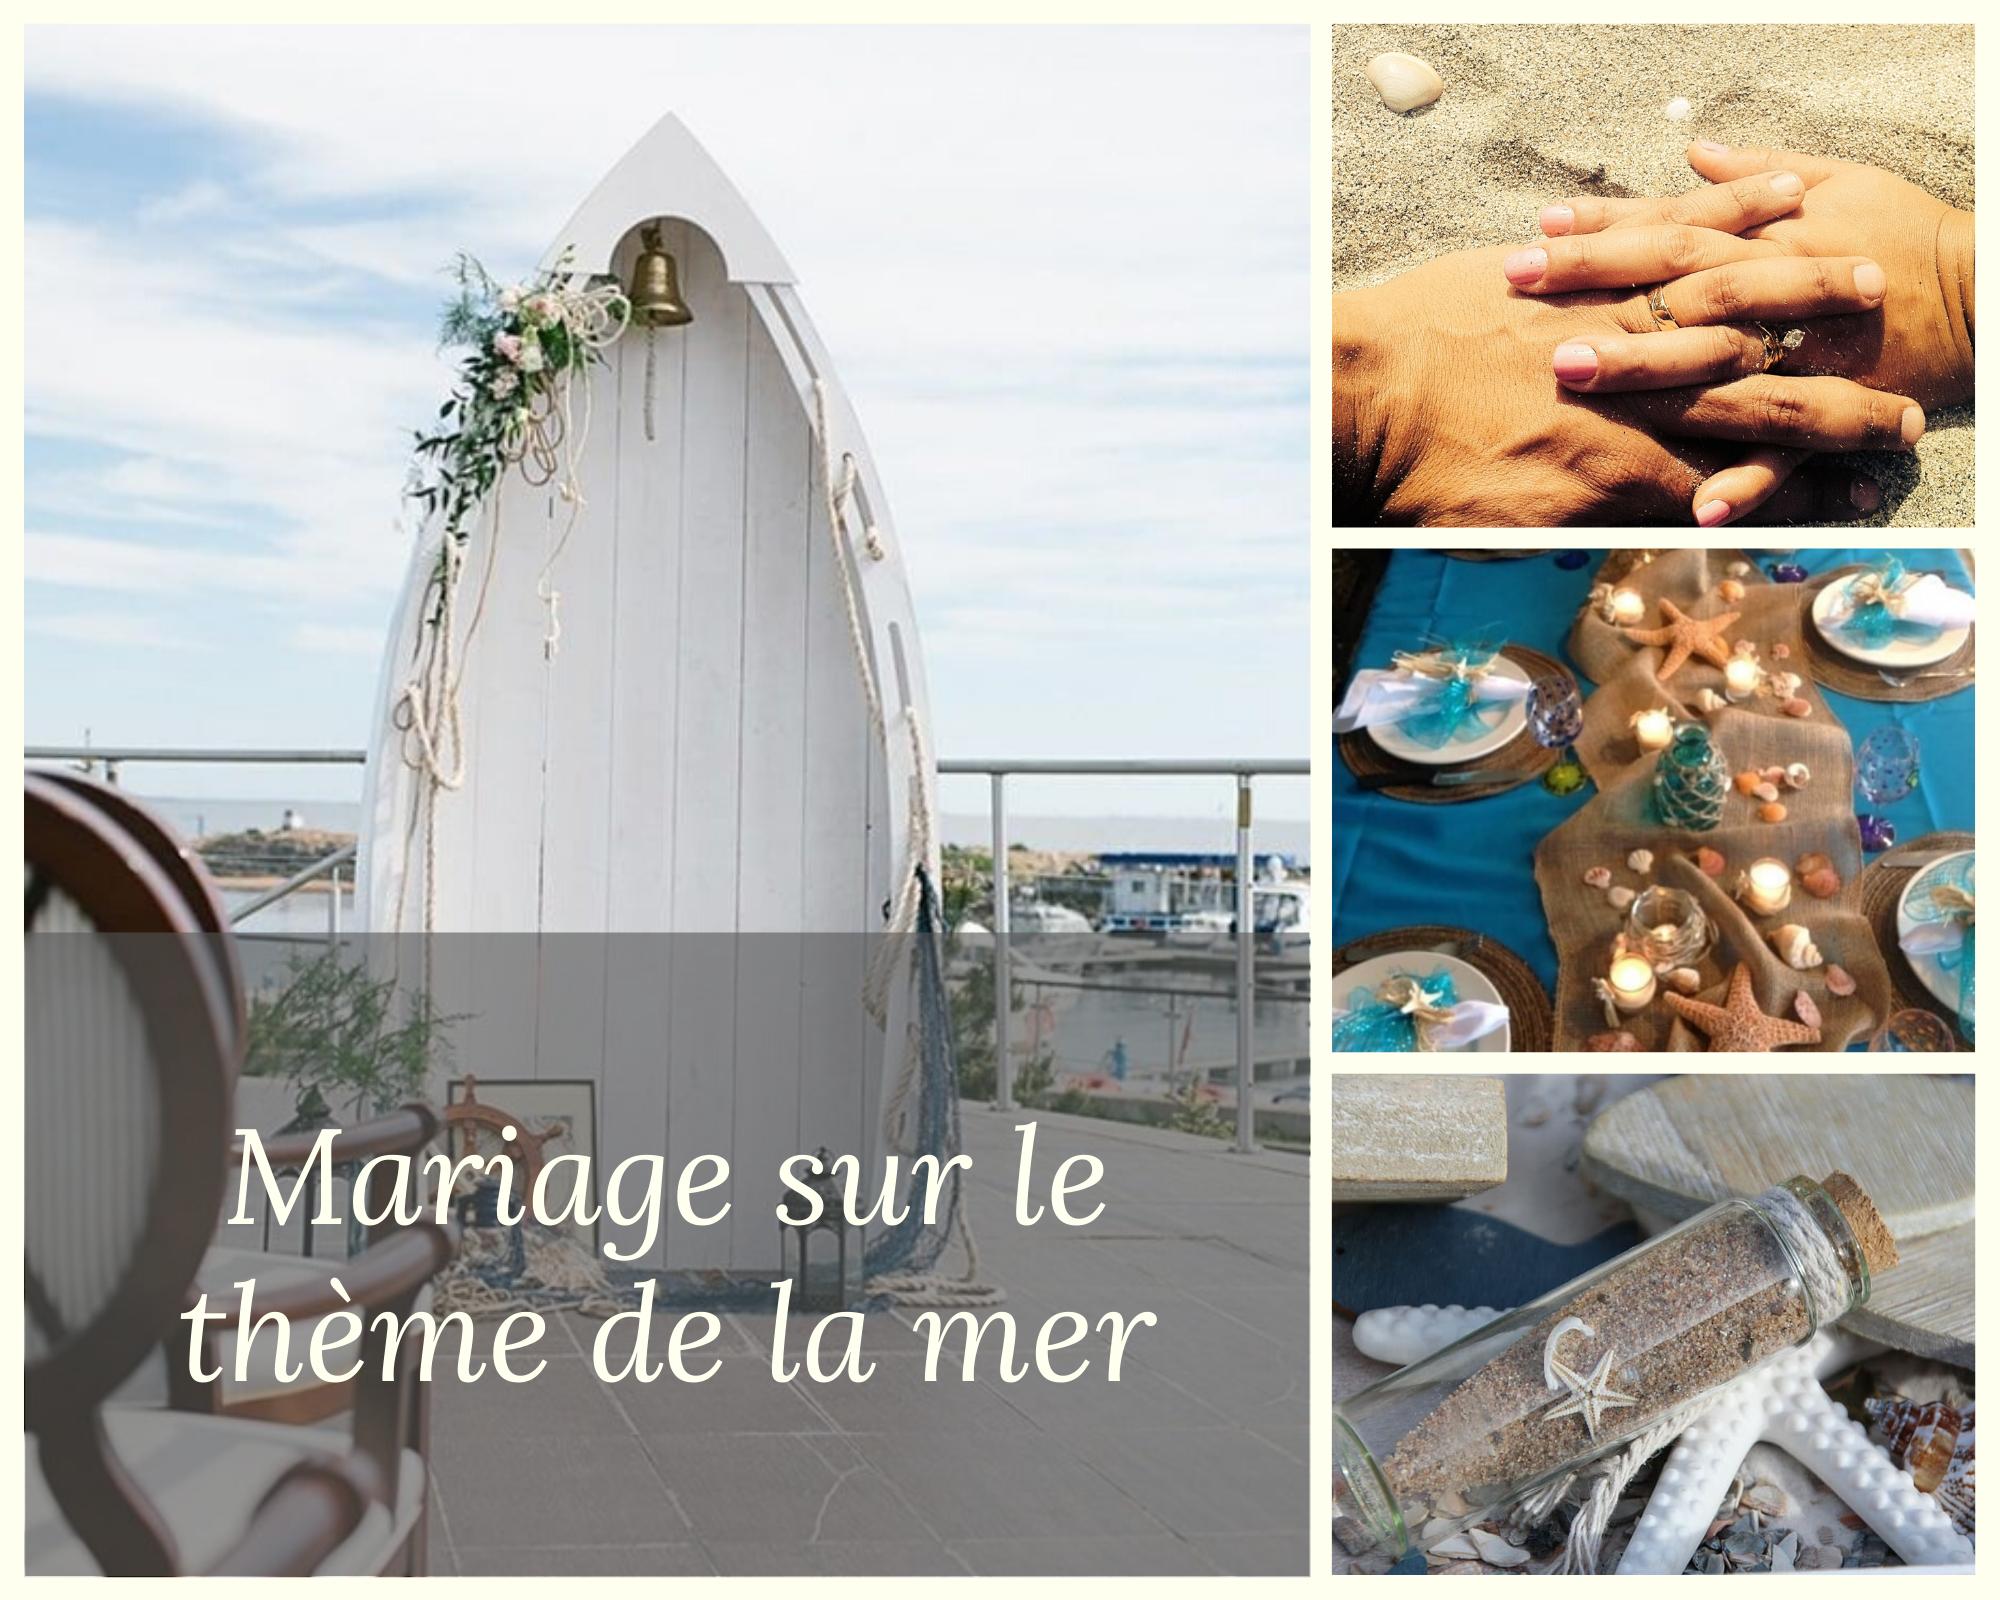 Bateau, coquillage, mouette ou encore coffre aux trésors pour un mariage sur le thème de la mer 